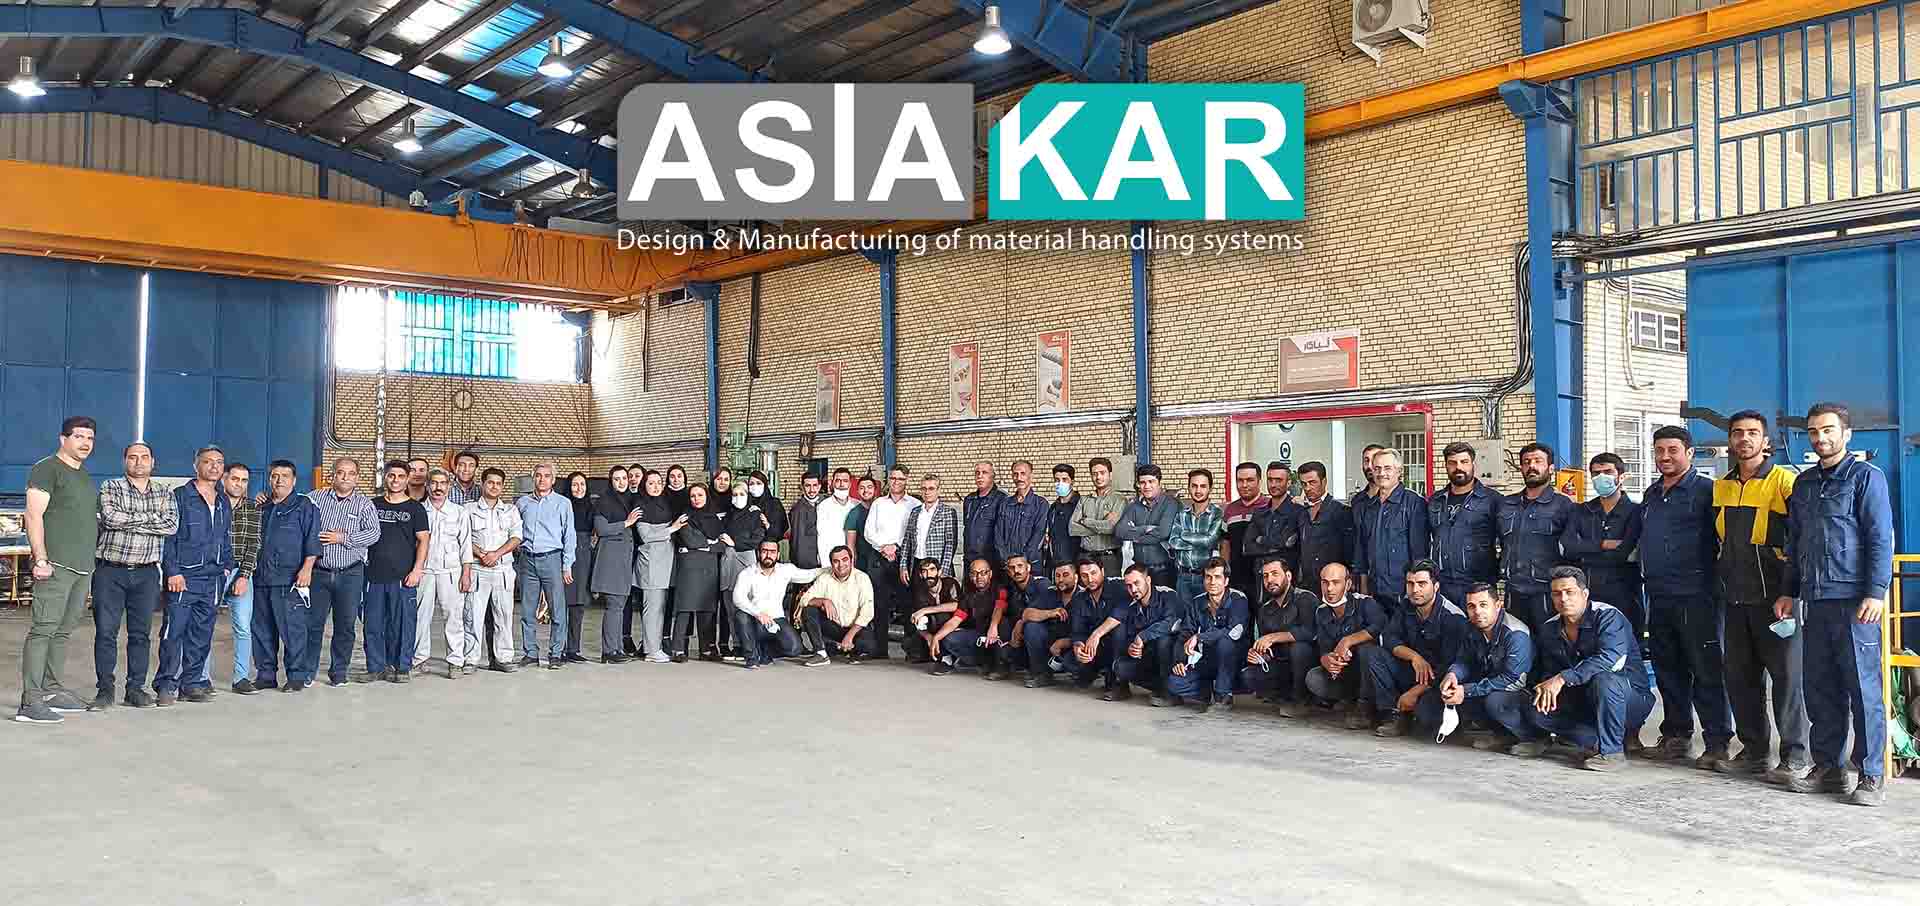 روز کارگر شرکت آسیاکار